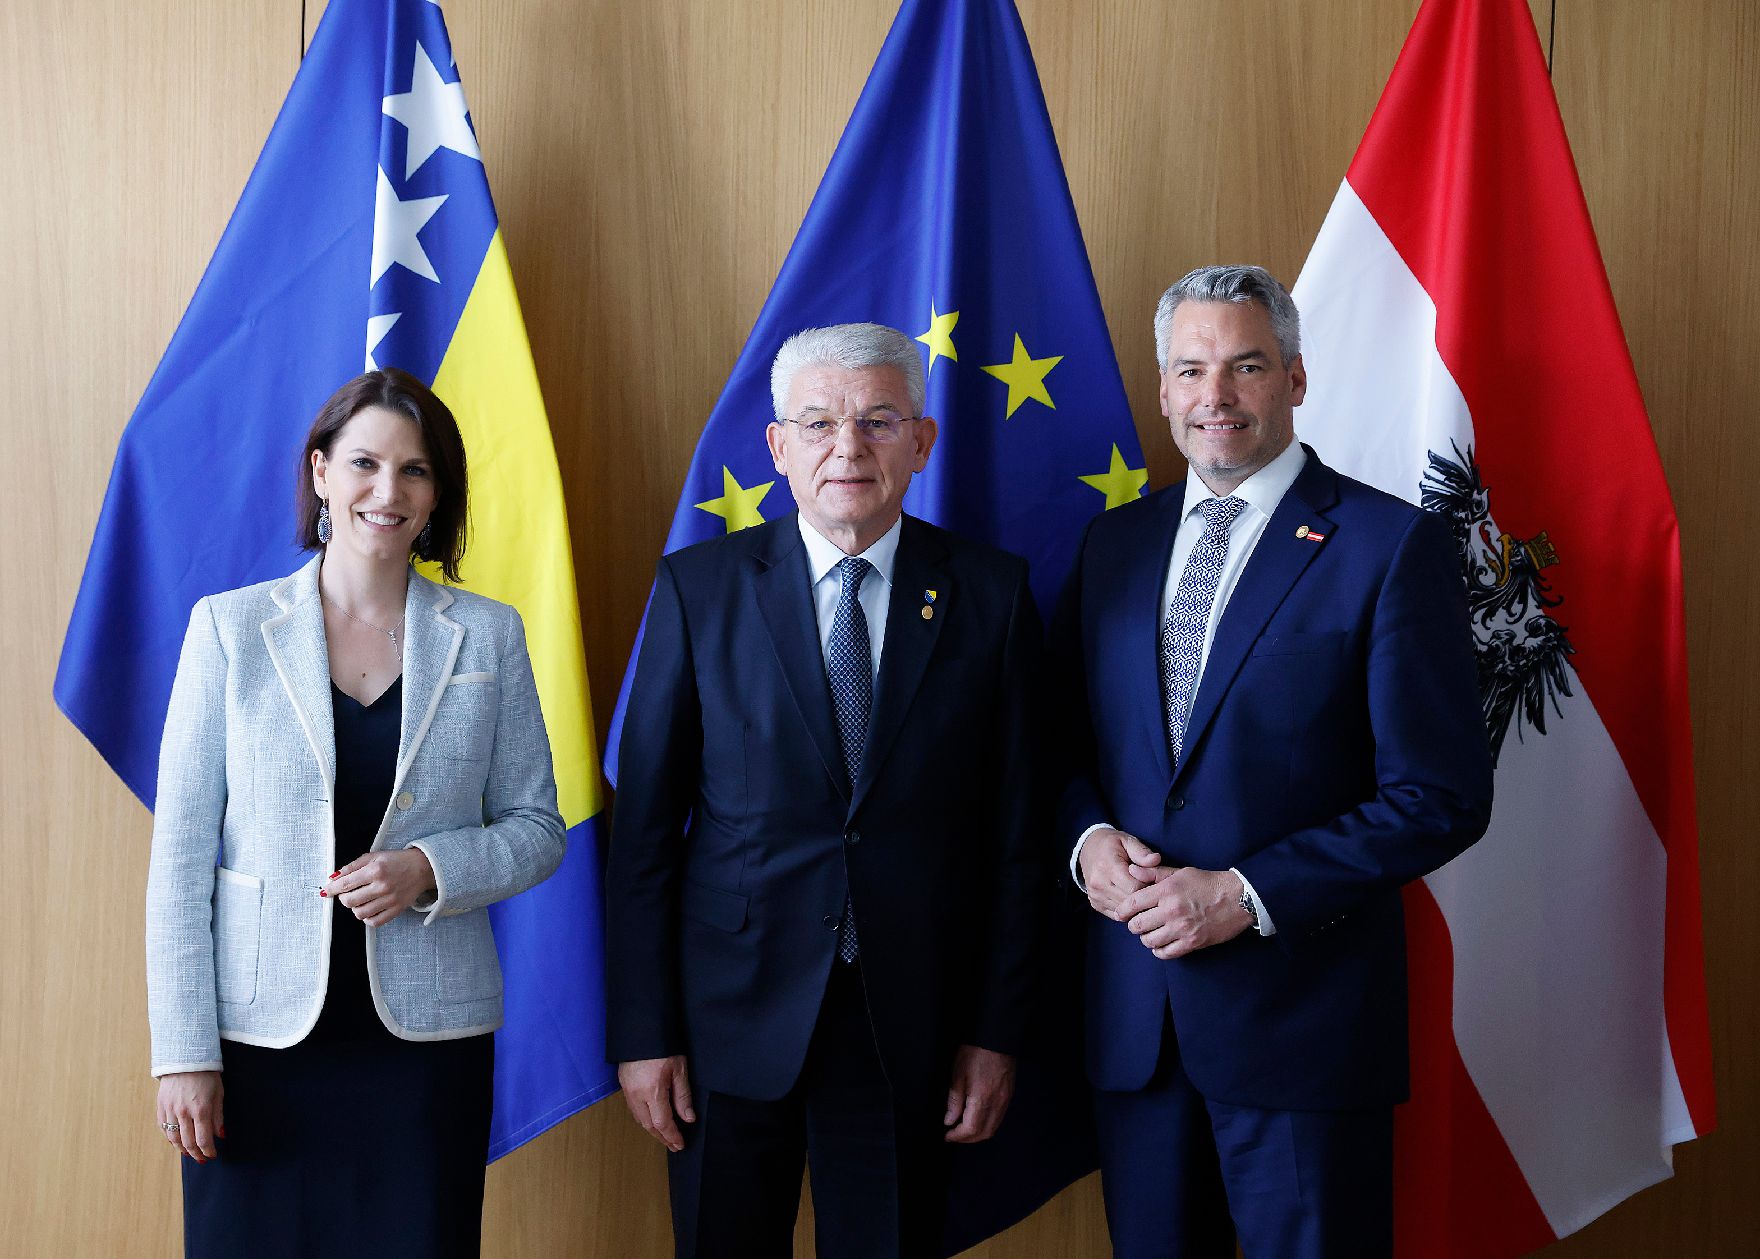 Am 23. Juni 2022 nahm Bundeskanzler Karl Nehammer (r.) am Europäischen Rat der Staats- und Regierungschefs teil. Im Bild mit Bundesministerin Karoline Edtstadler (l.) und Šefik Džaferović (m.), dem bosnischen Mitglied des Staatspräsidiums von Bosnien und Herzegowina.